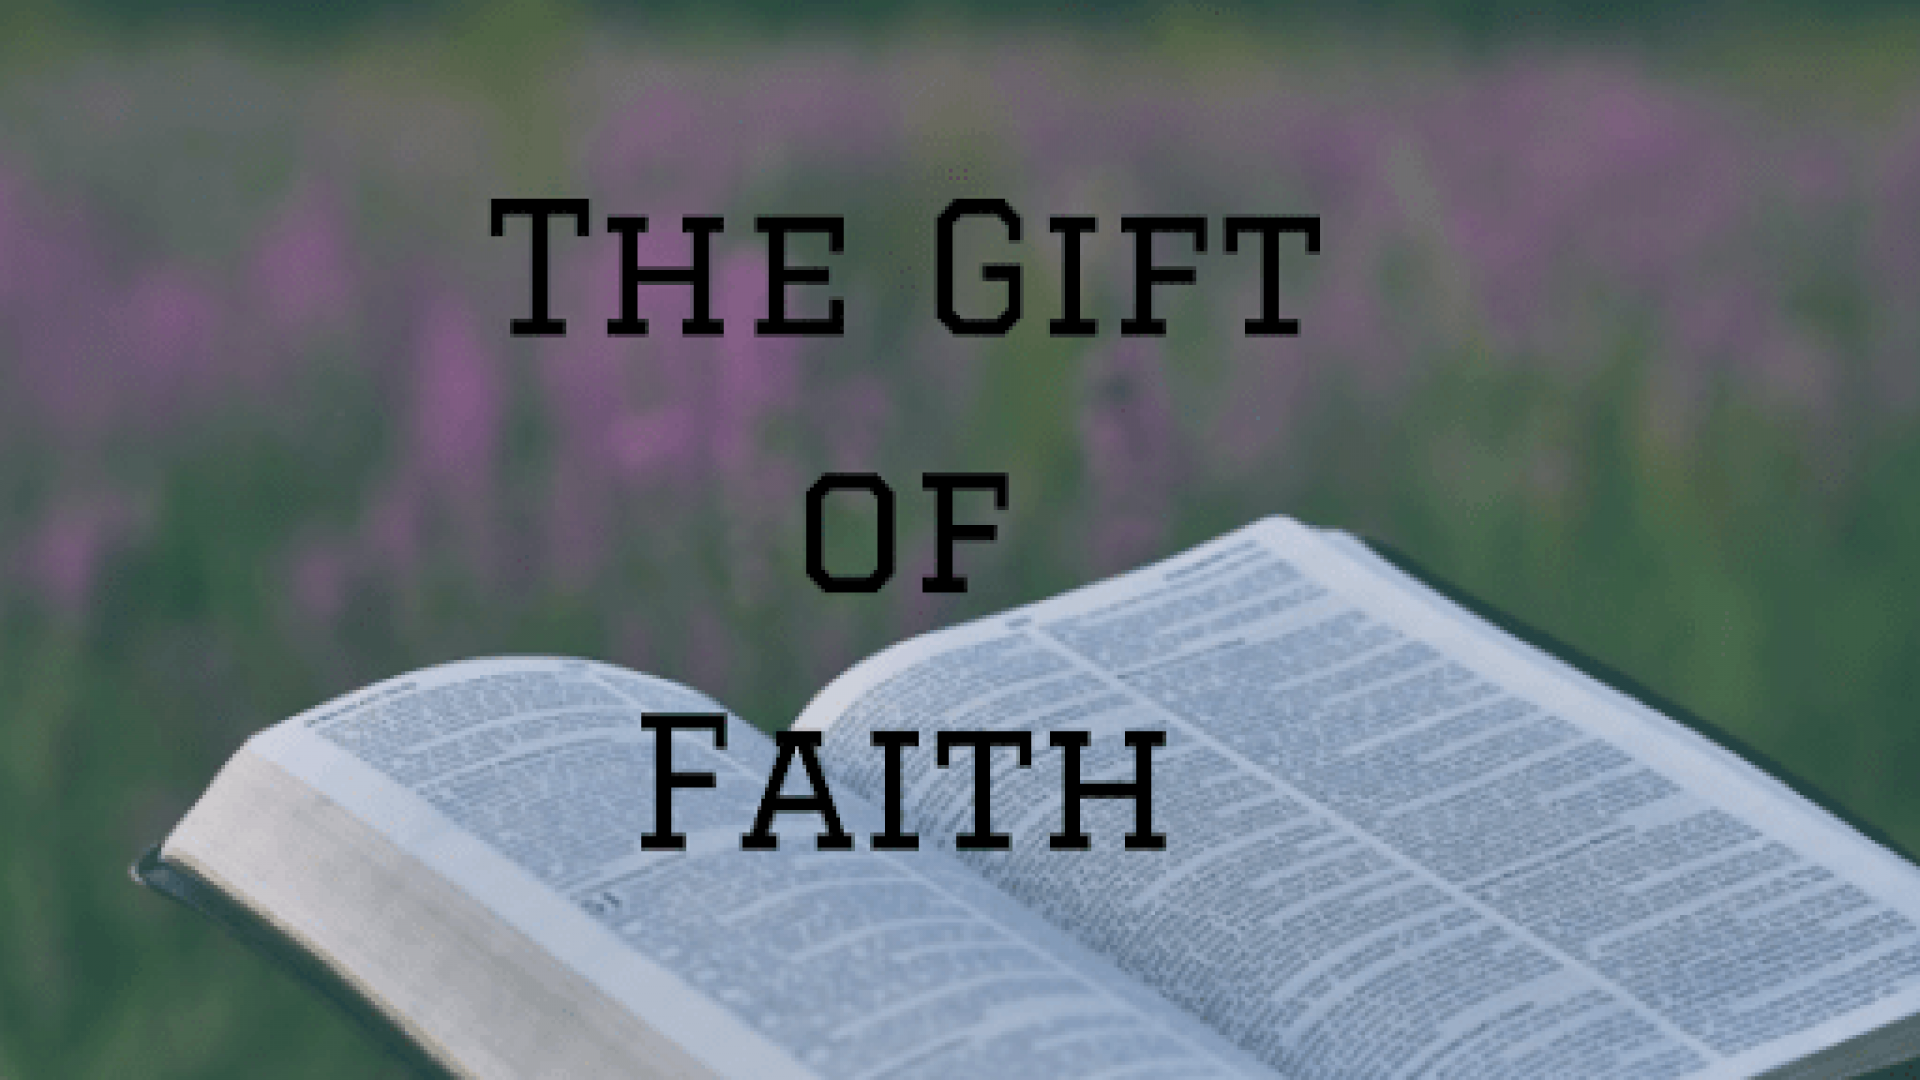 THE GIFT OF FAITH